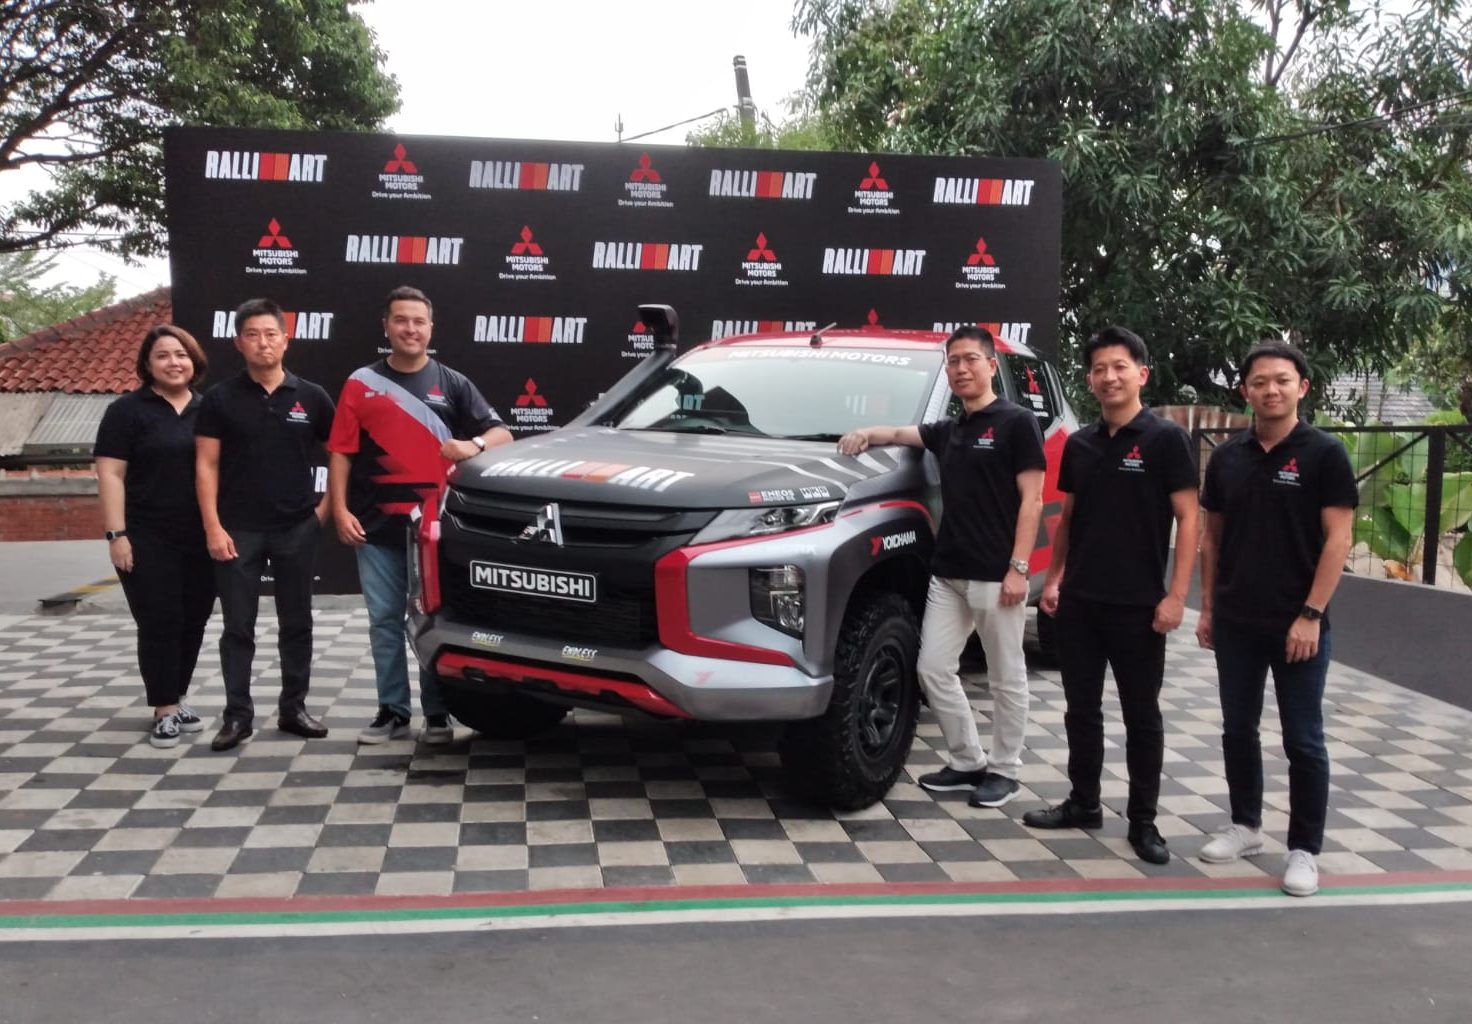 Ajang AXCR akan menjadi ajang pembuktian Daya Tahan Mitsubishi yang akan di gelar di daratan Thailand dan Kamboja